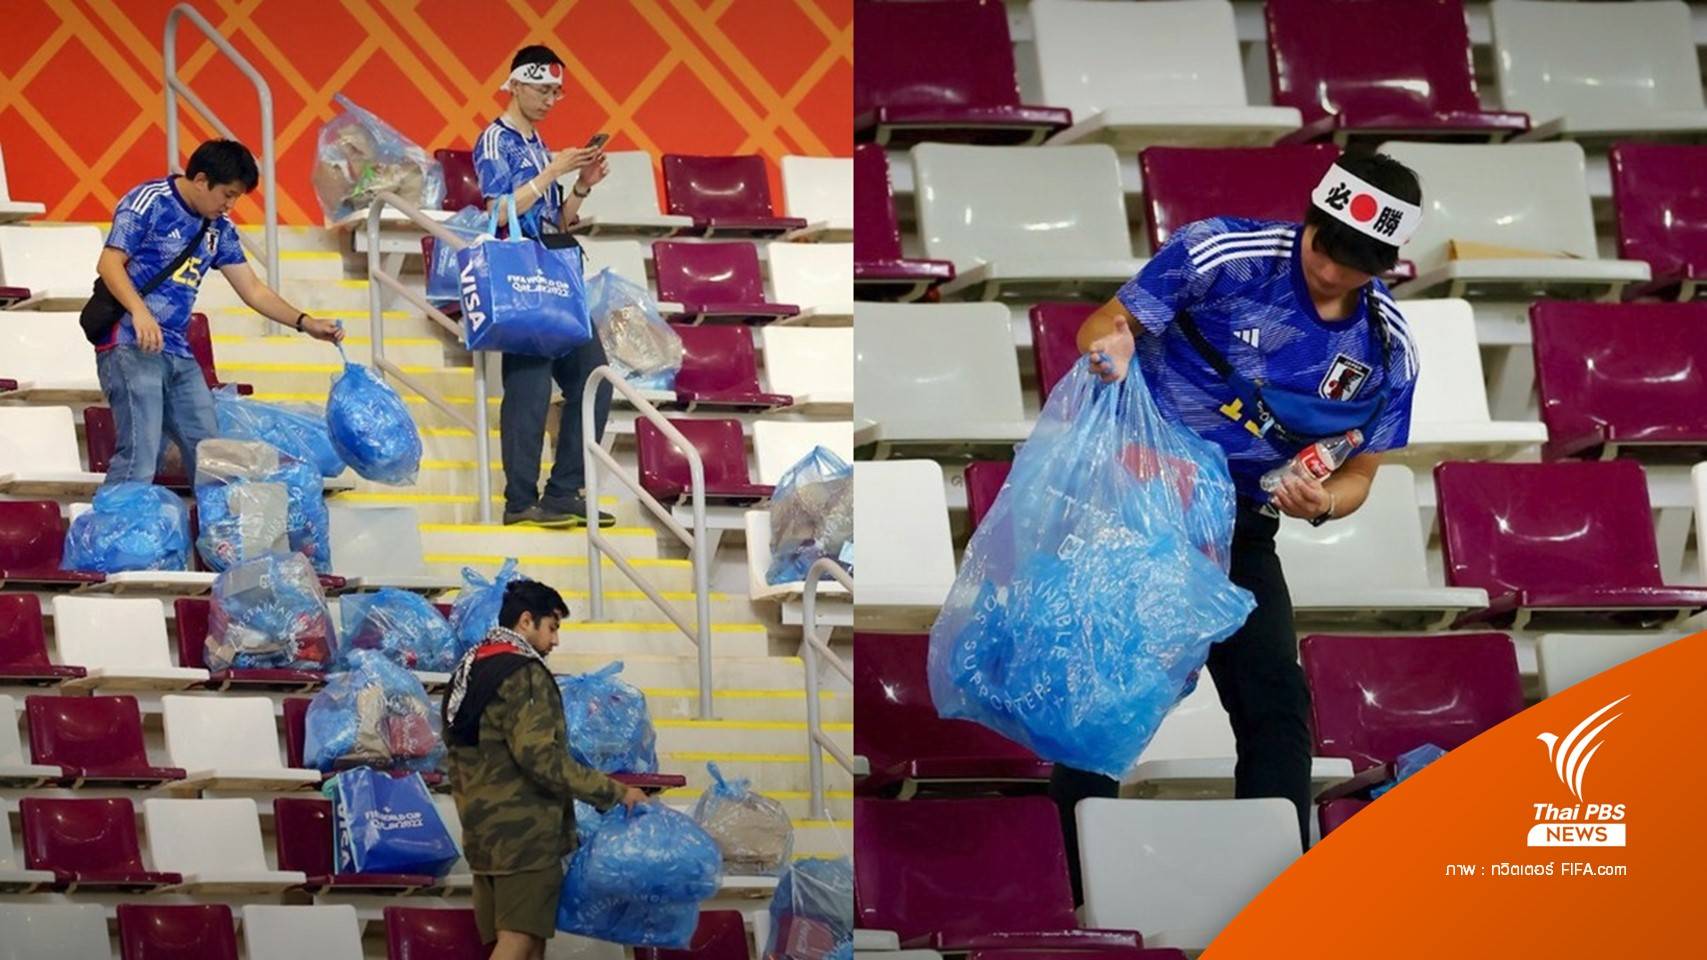 ชื่นชม "นักเตะ-แฟนบอลญี่ปุ่น" ทำความสะอาดหลังจบเกมบอลโลก